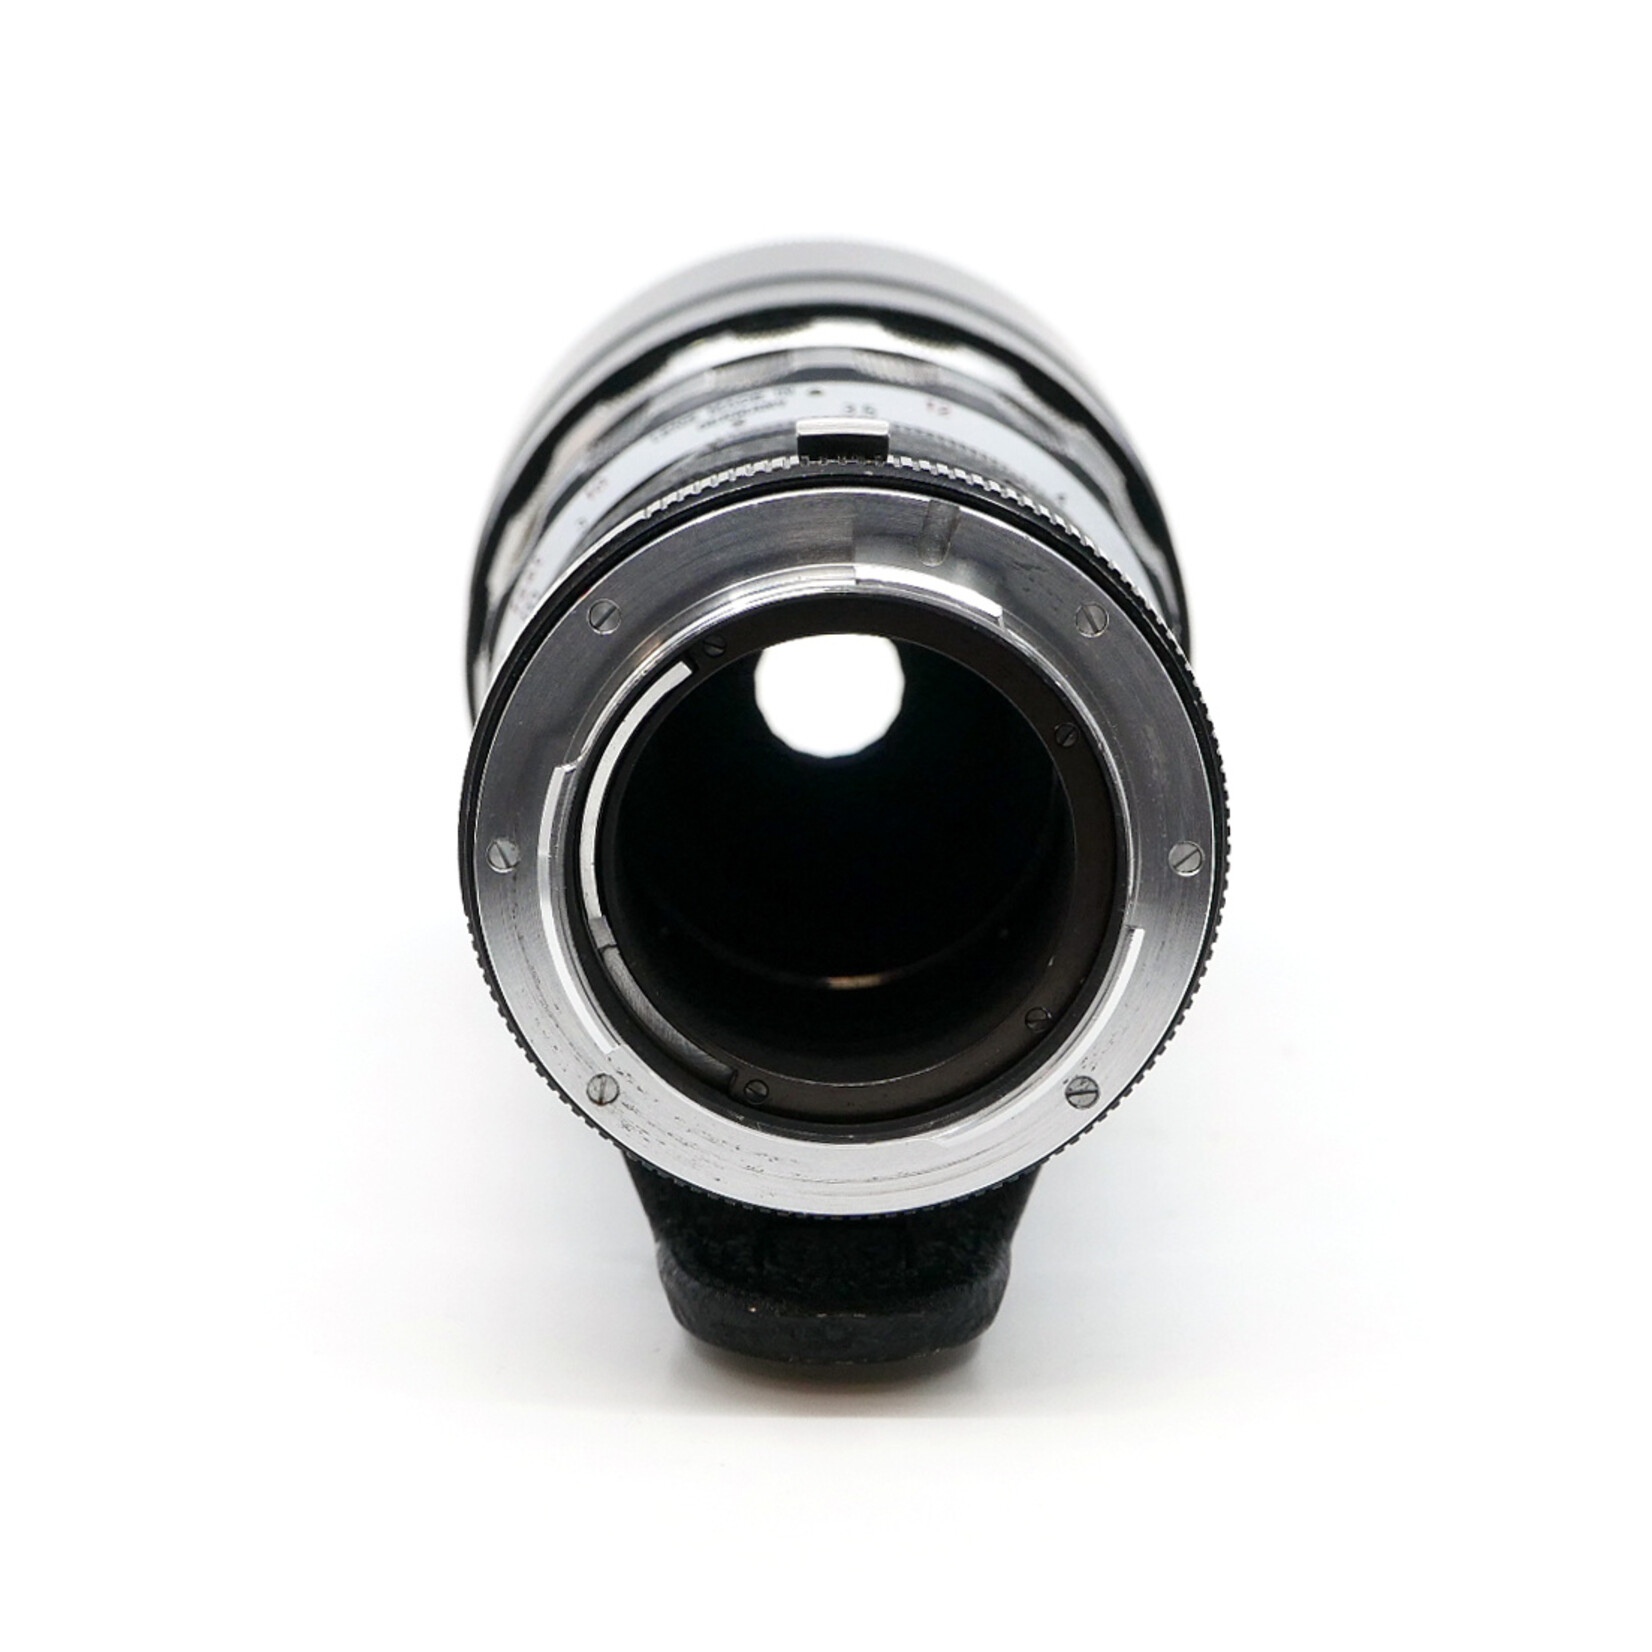 Leica Leica Telyt 200mm f/4 w/M-R adaptor (Used)